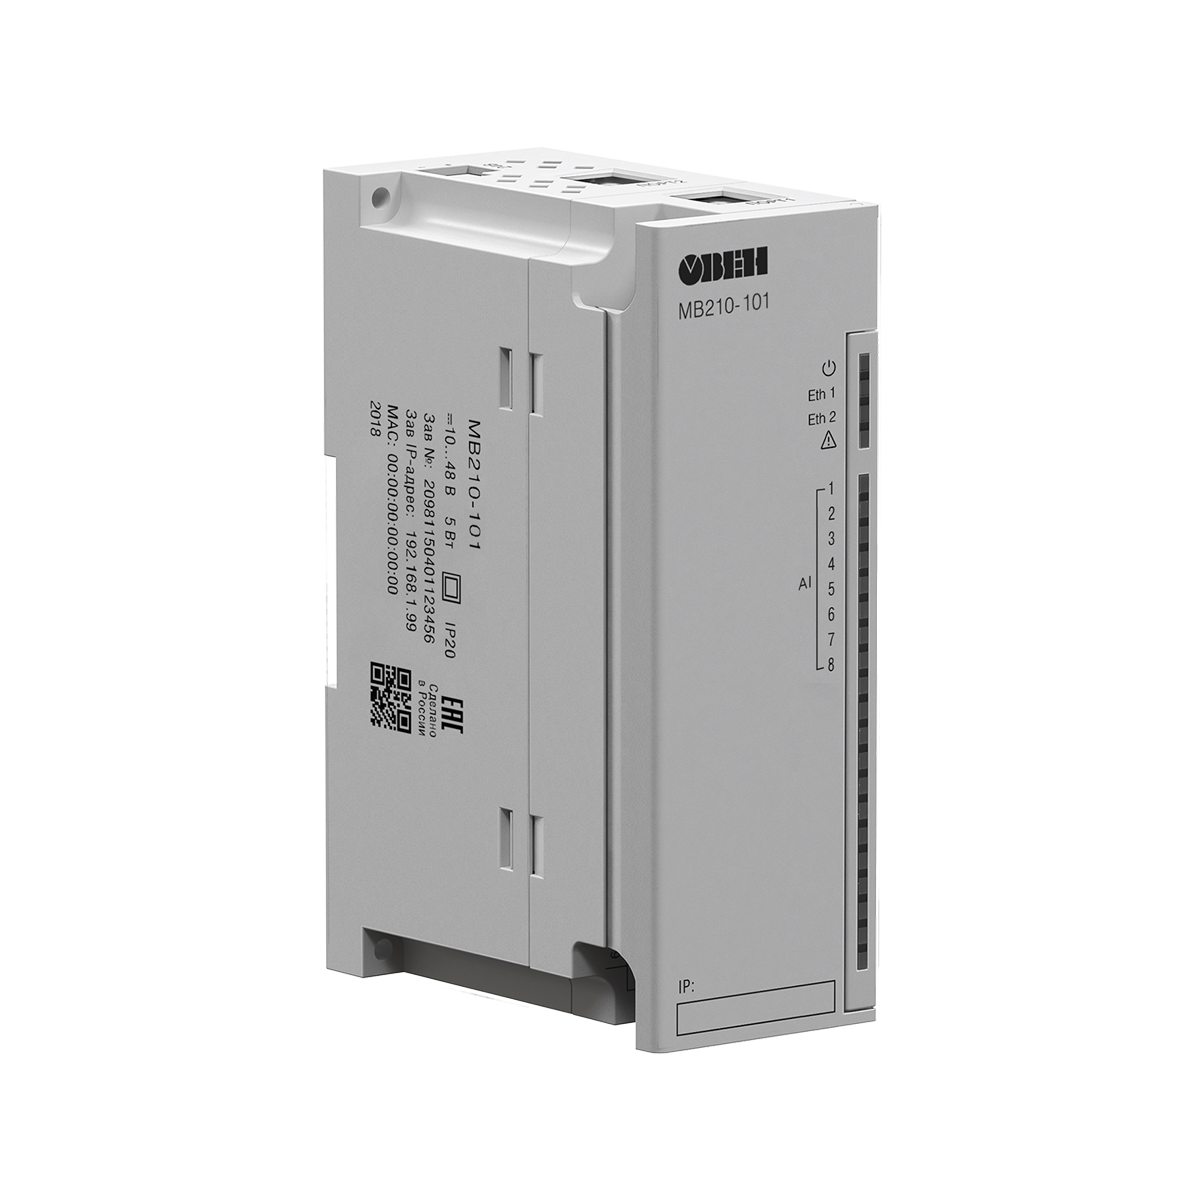 МВ210-101 ОВЕН модули аналогового ввода с универсальными входами (Ethernet)